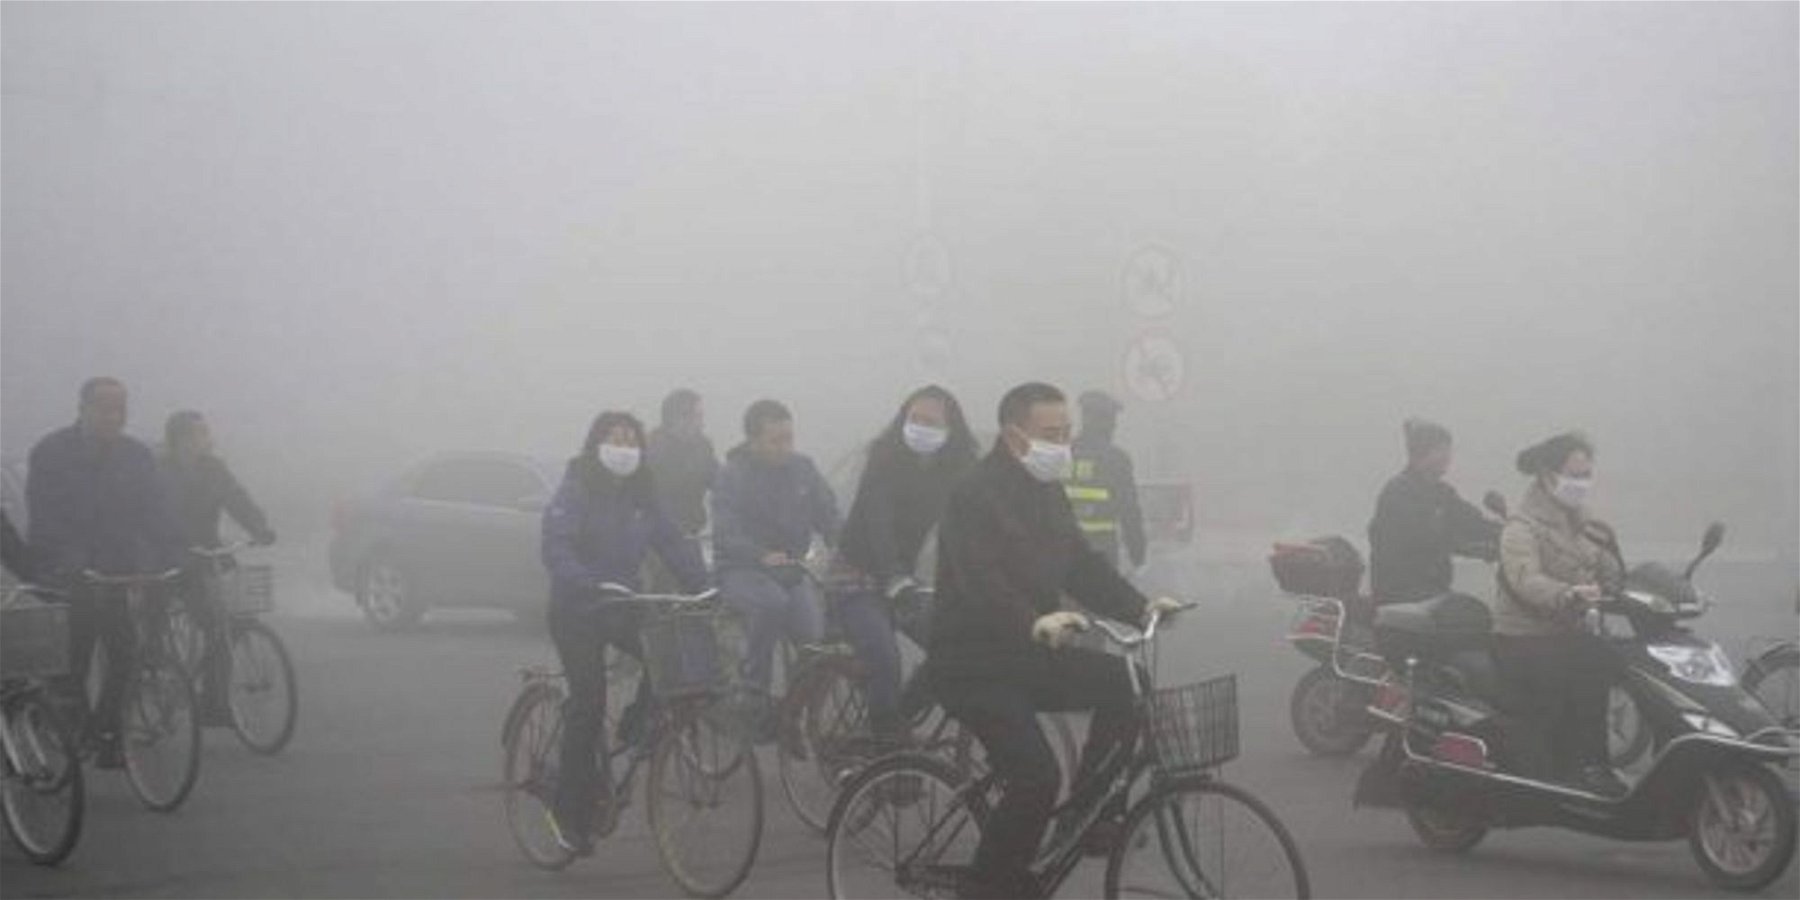 La pollution atmosphérique en Chine causée entre autres par les centrales à charbon.